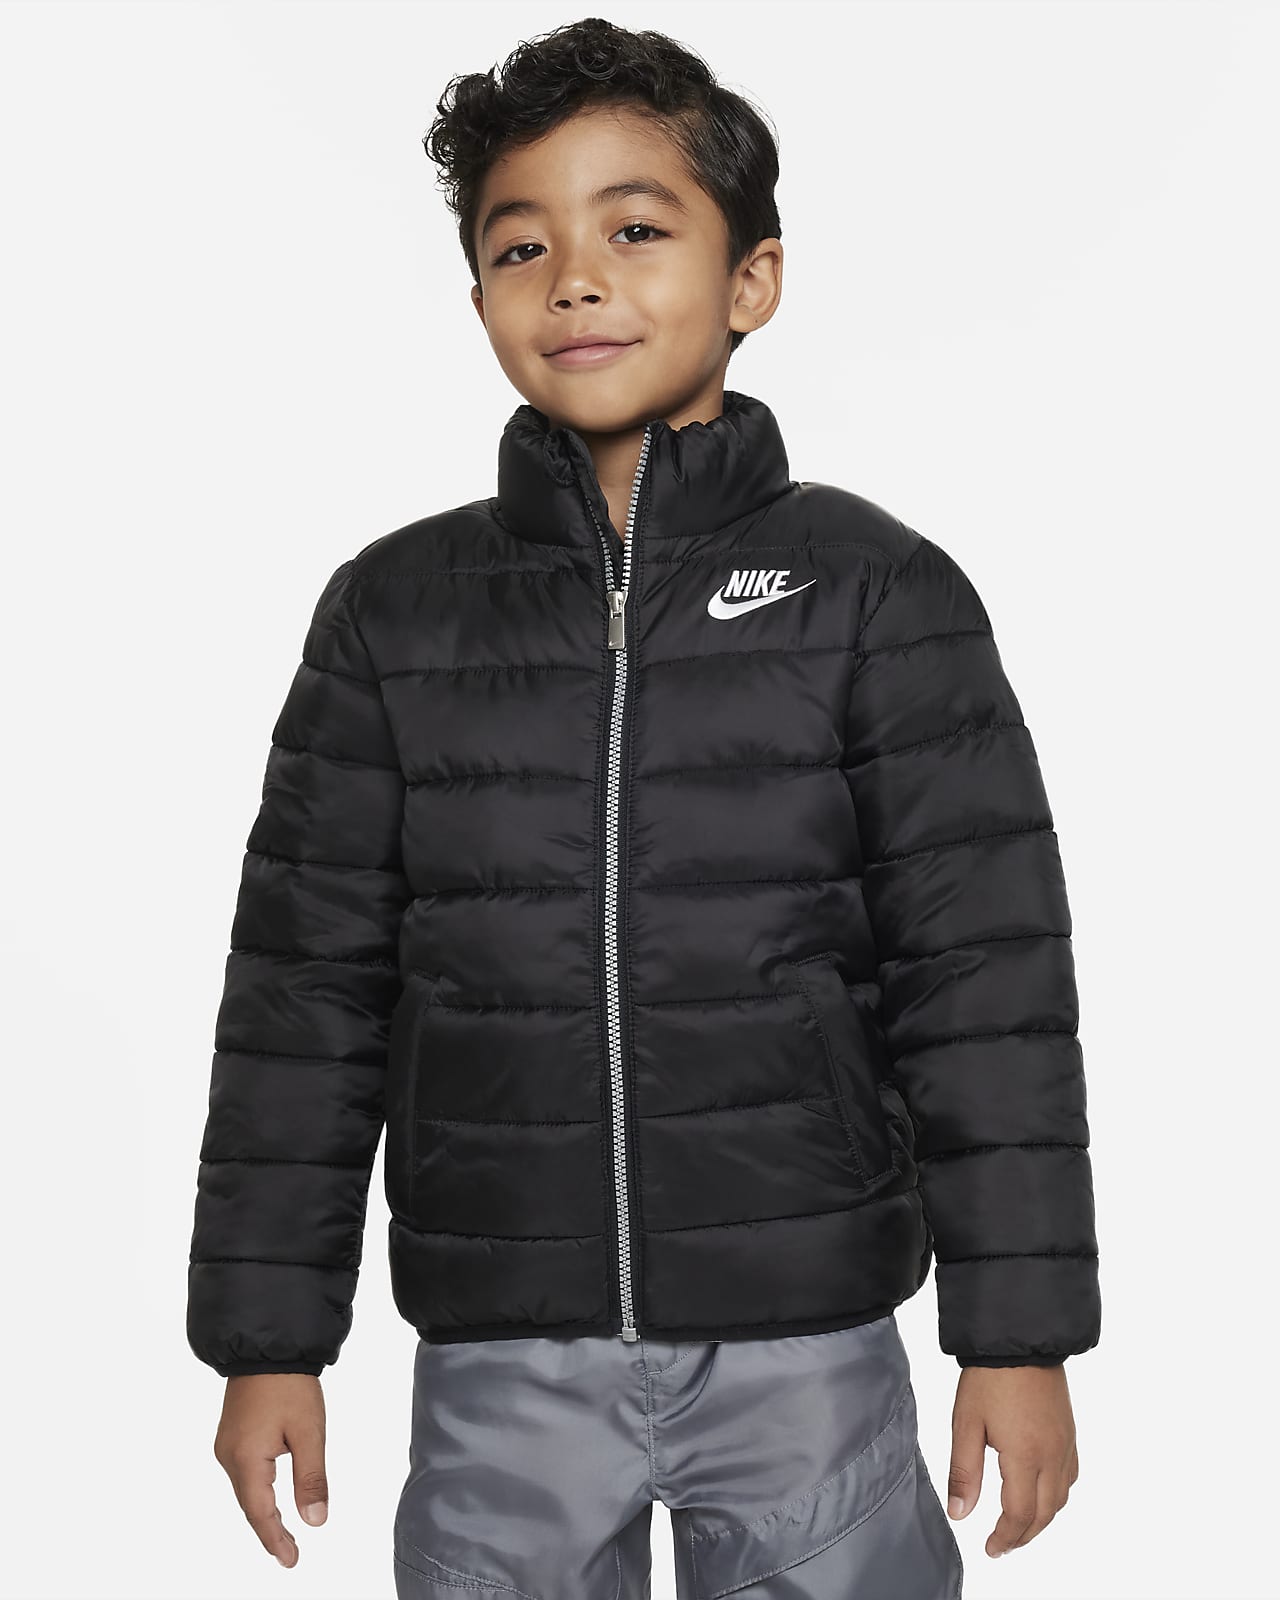 Nike Solid Puffer Jacket Little Kids' Jacket